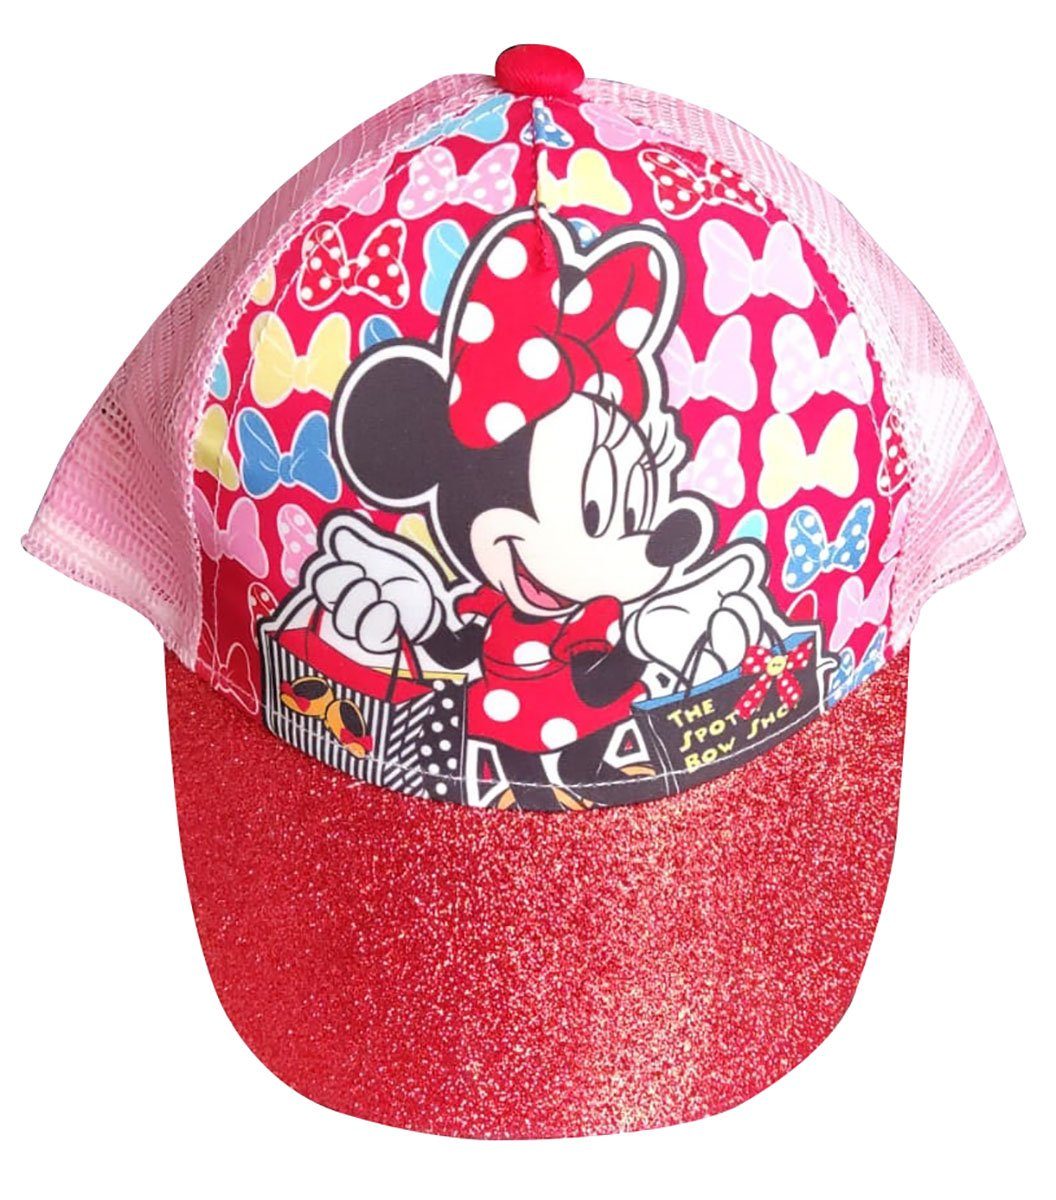 Kappe Schirmmütze m Basecap Maus Minnie Sun Disney Cap City Schirmmütze